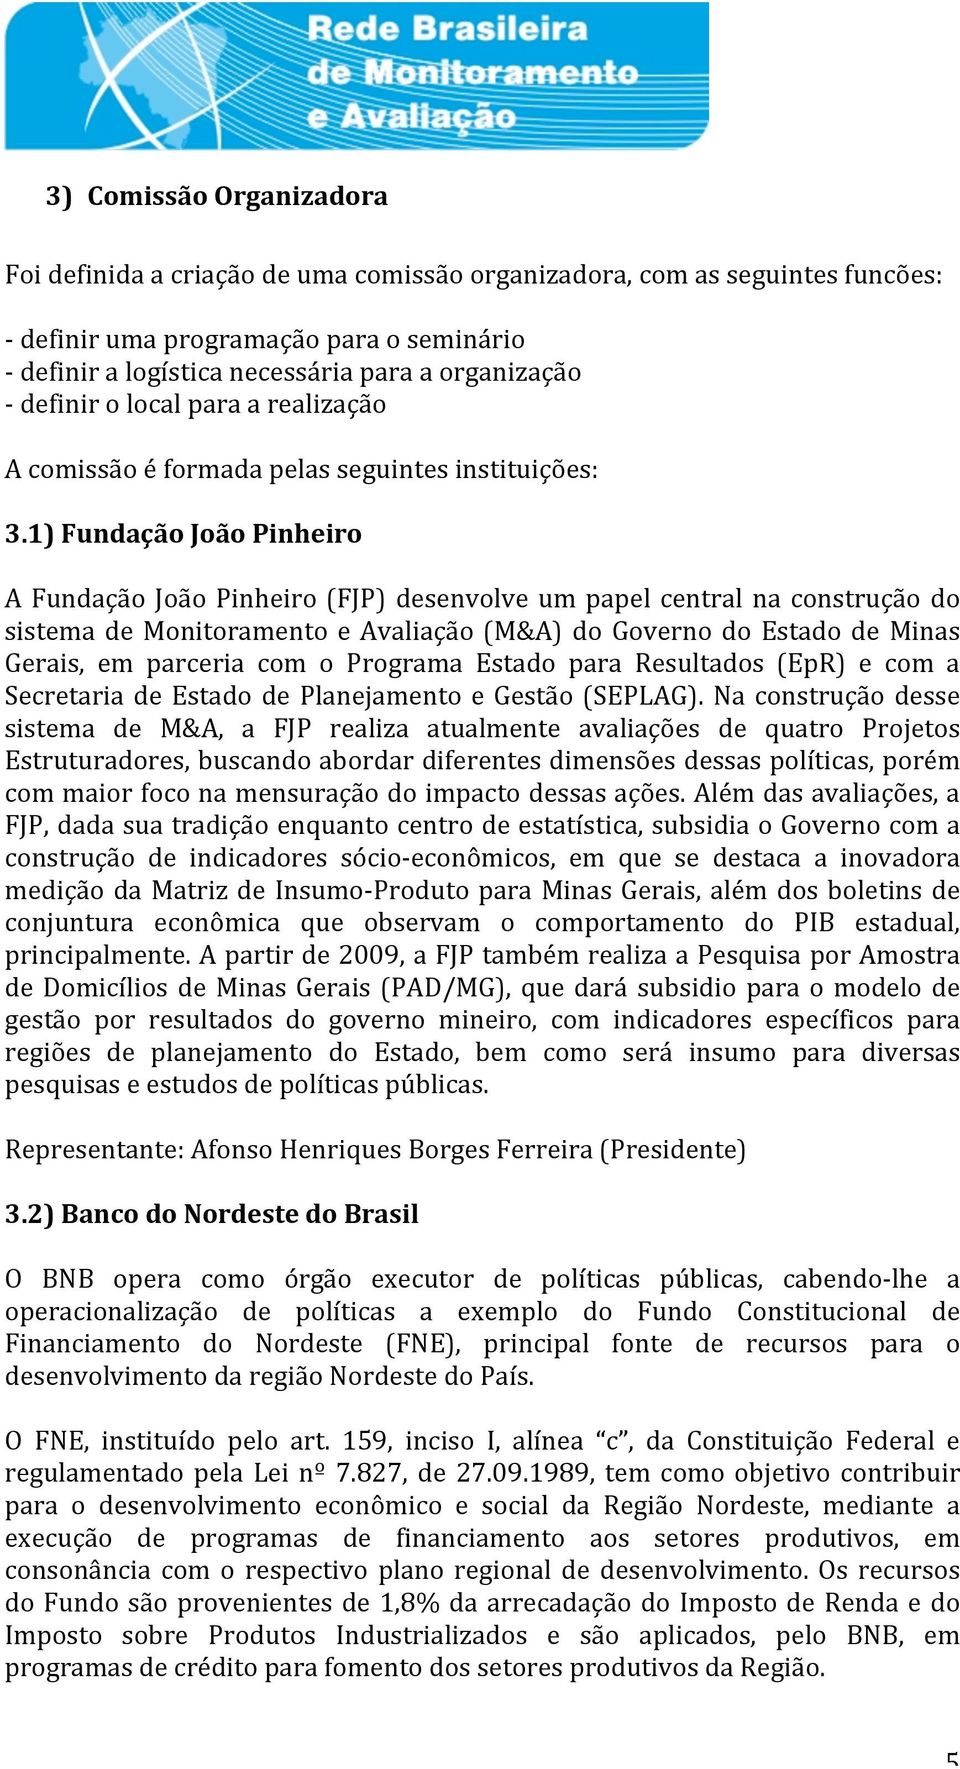 1)FundaçãoJoãoPinheiro A Fundação João Pinheiro(FJP) desenvolve um papel central na construção do sistema de Monitoramento e Avaliação(M&A) do Governo do Estado de Minas Gerais, em parceria com o